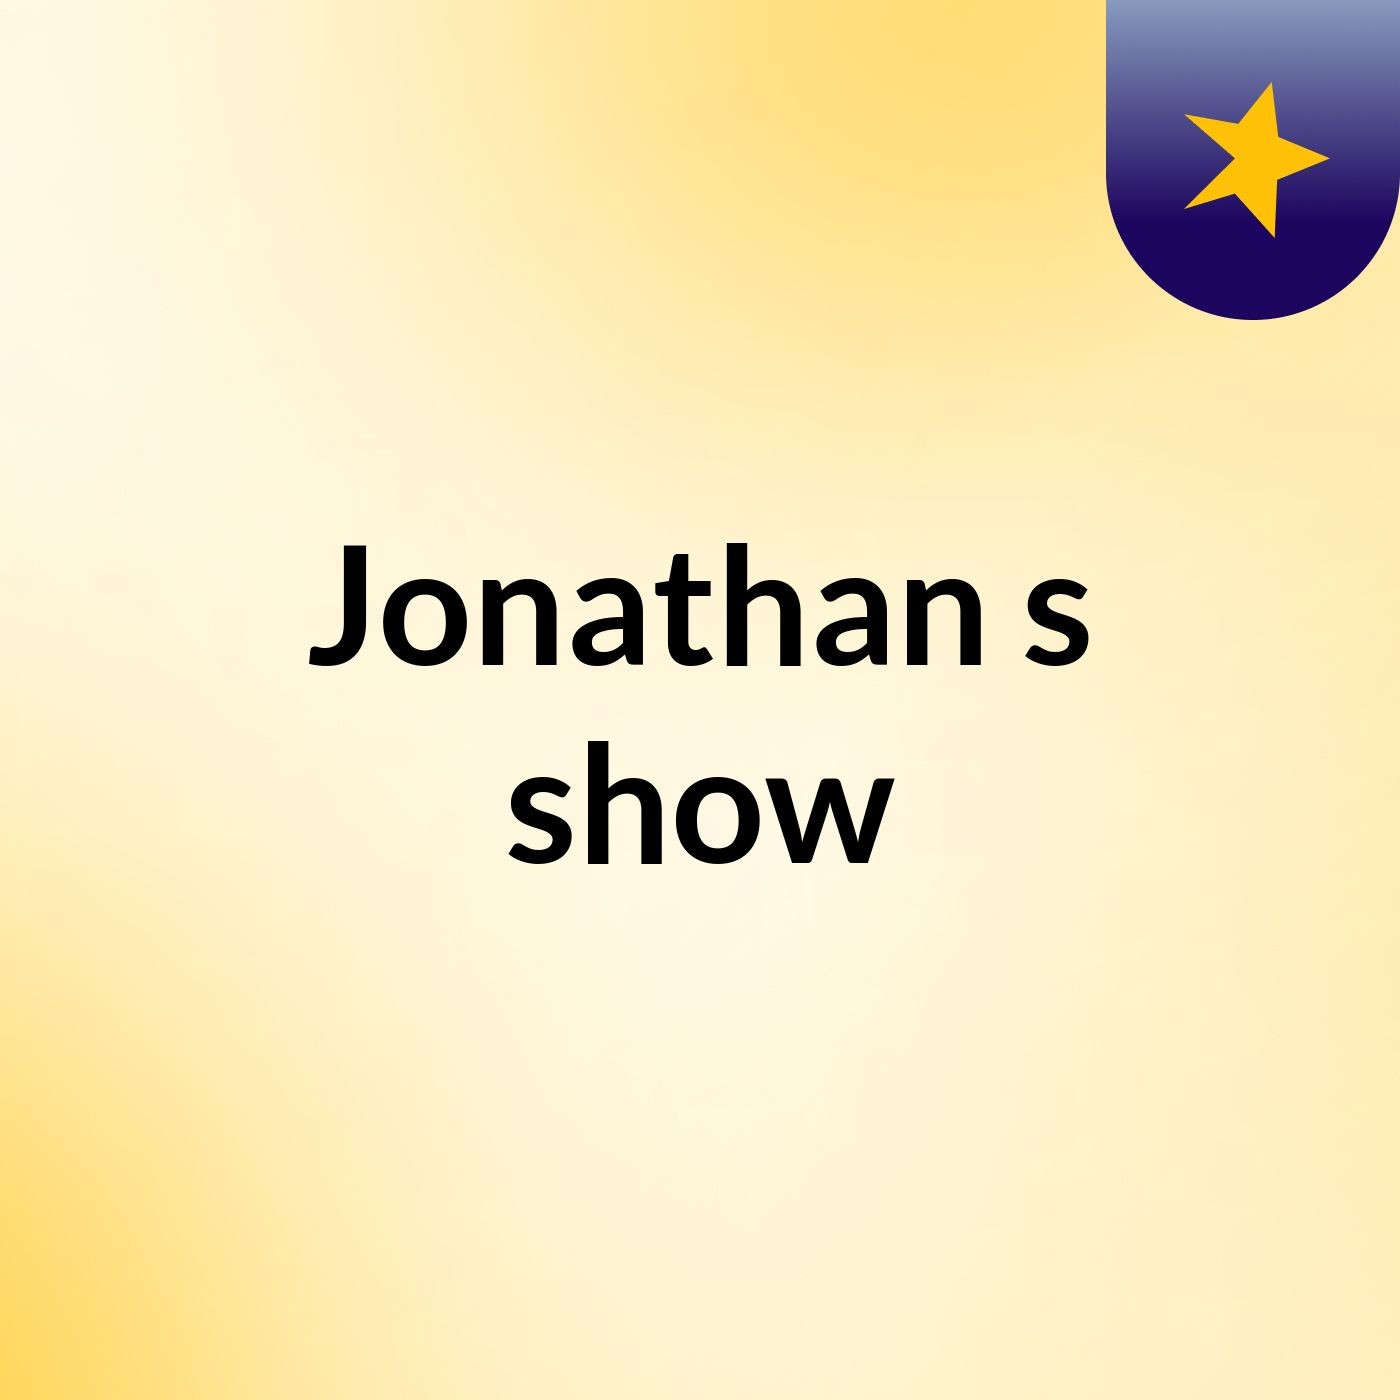 Jonathan's show